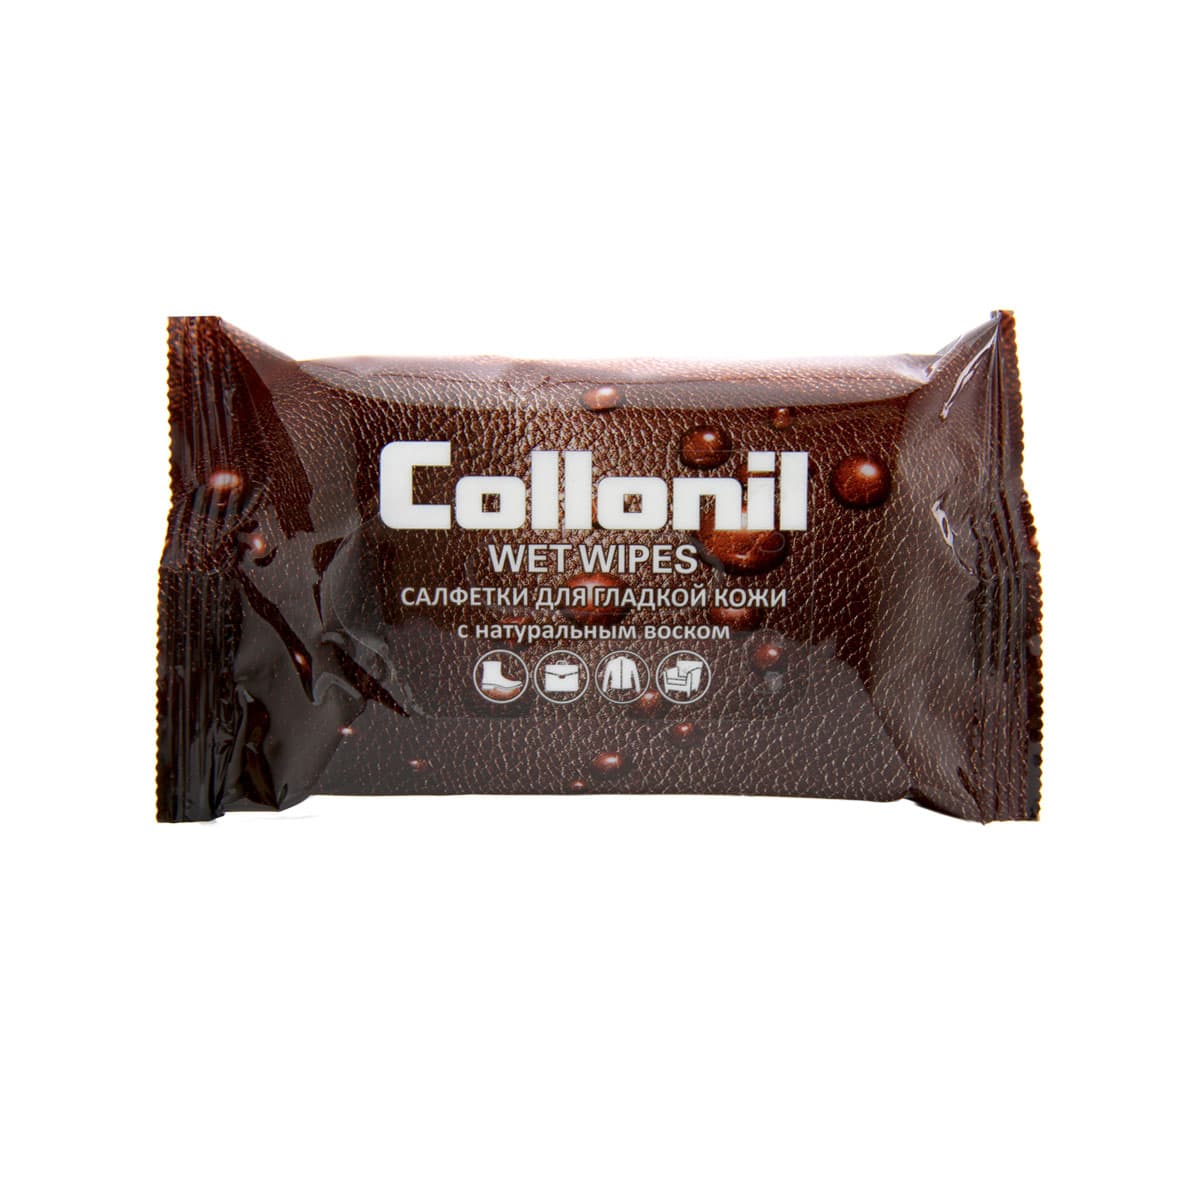 Влажные салфетки для гладкой кожи Collonil 15 шт салфетки влажные collonil с пятновыводителем 15